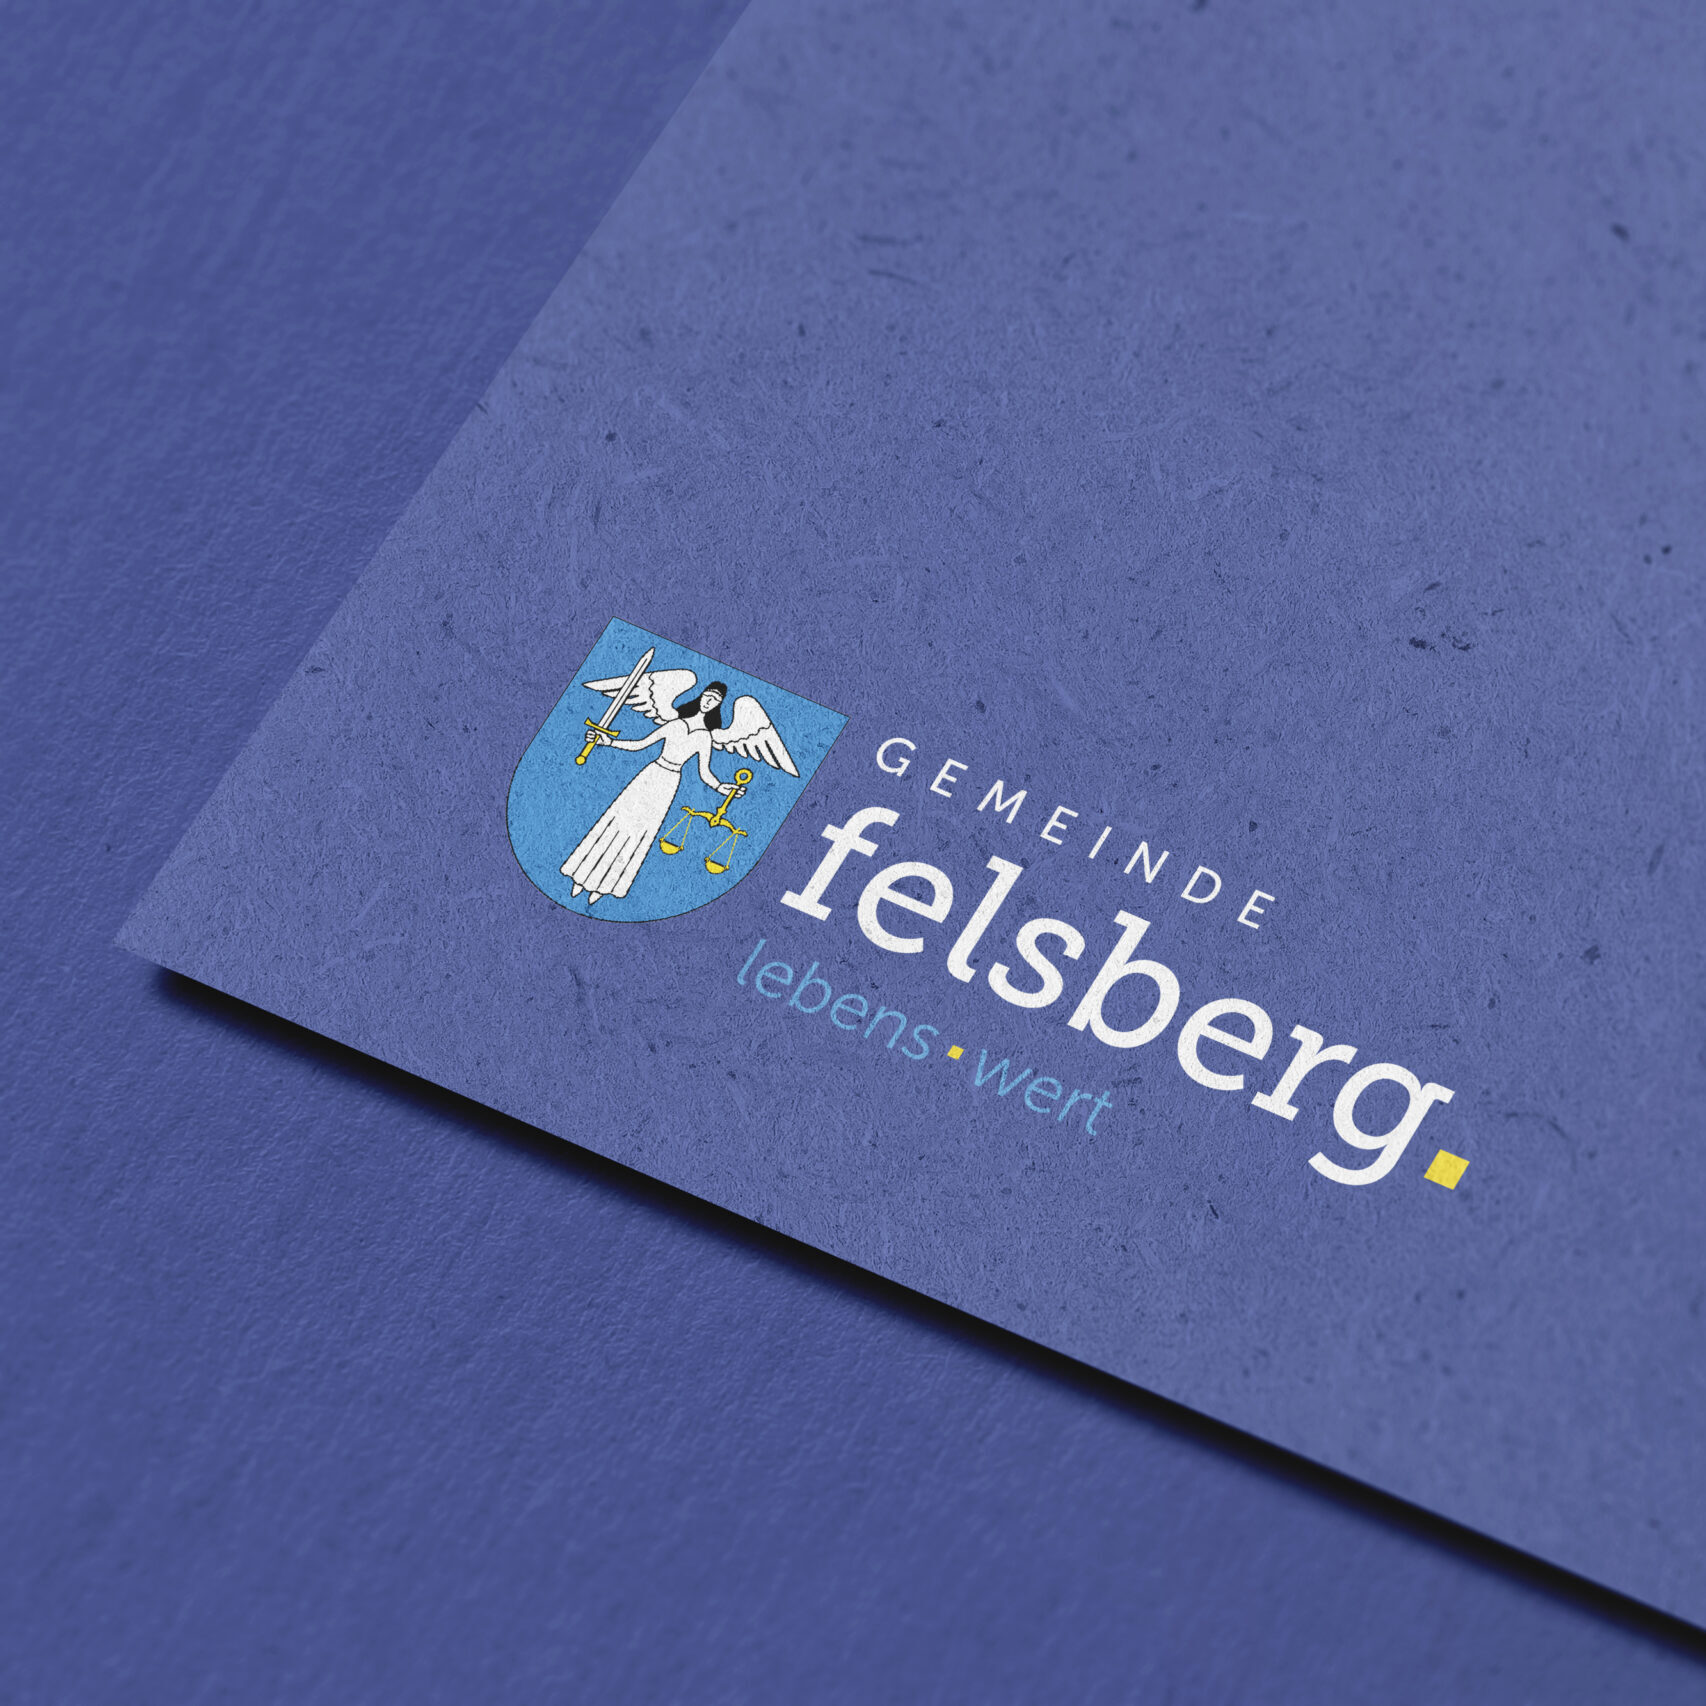 Ein blaues Papier mit dem Logo der Gemeinde Felsberg daruf, designt von der Bündner Grafikerin Chiara Joos.